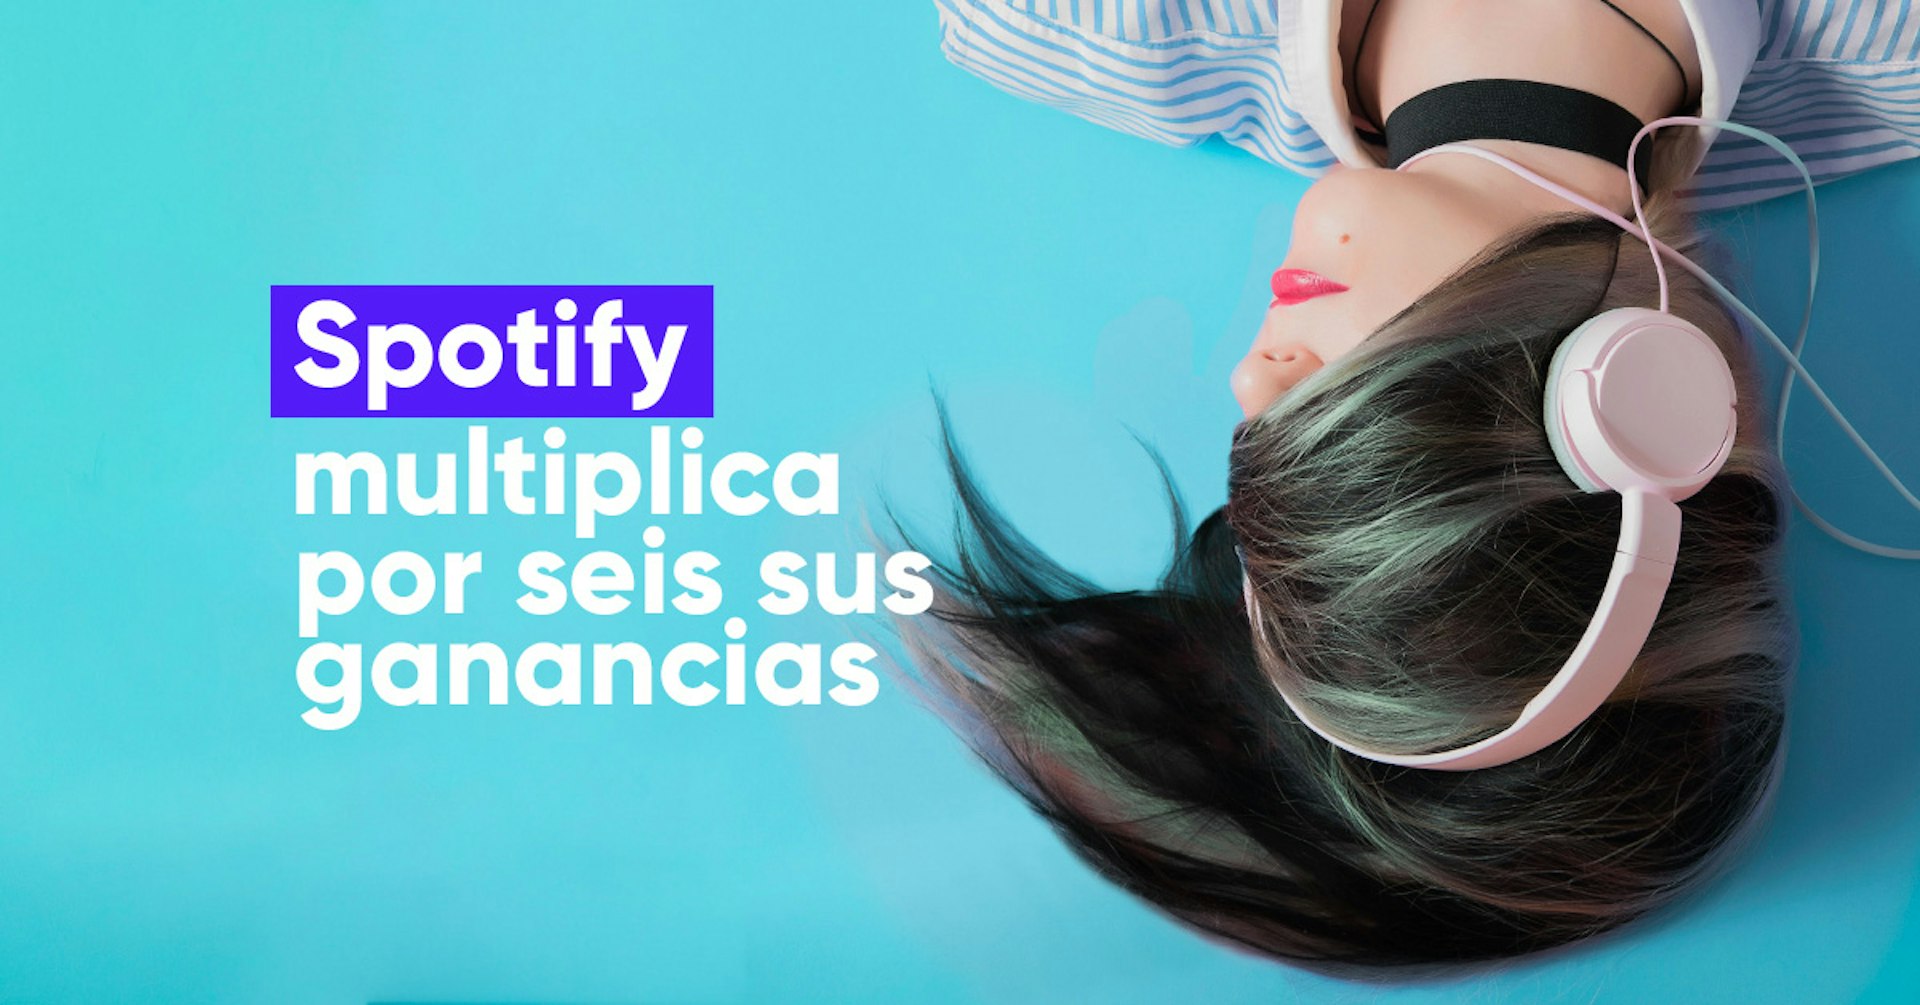 Spotify multiplica 6 veces sus beneficios gracias a los podcast